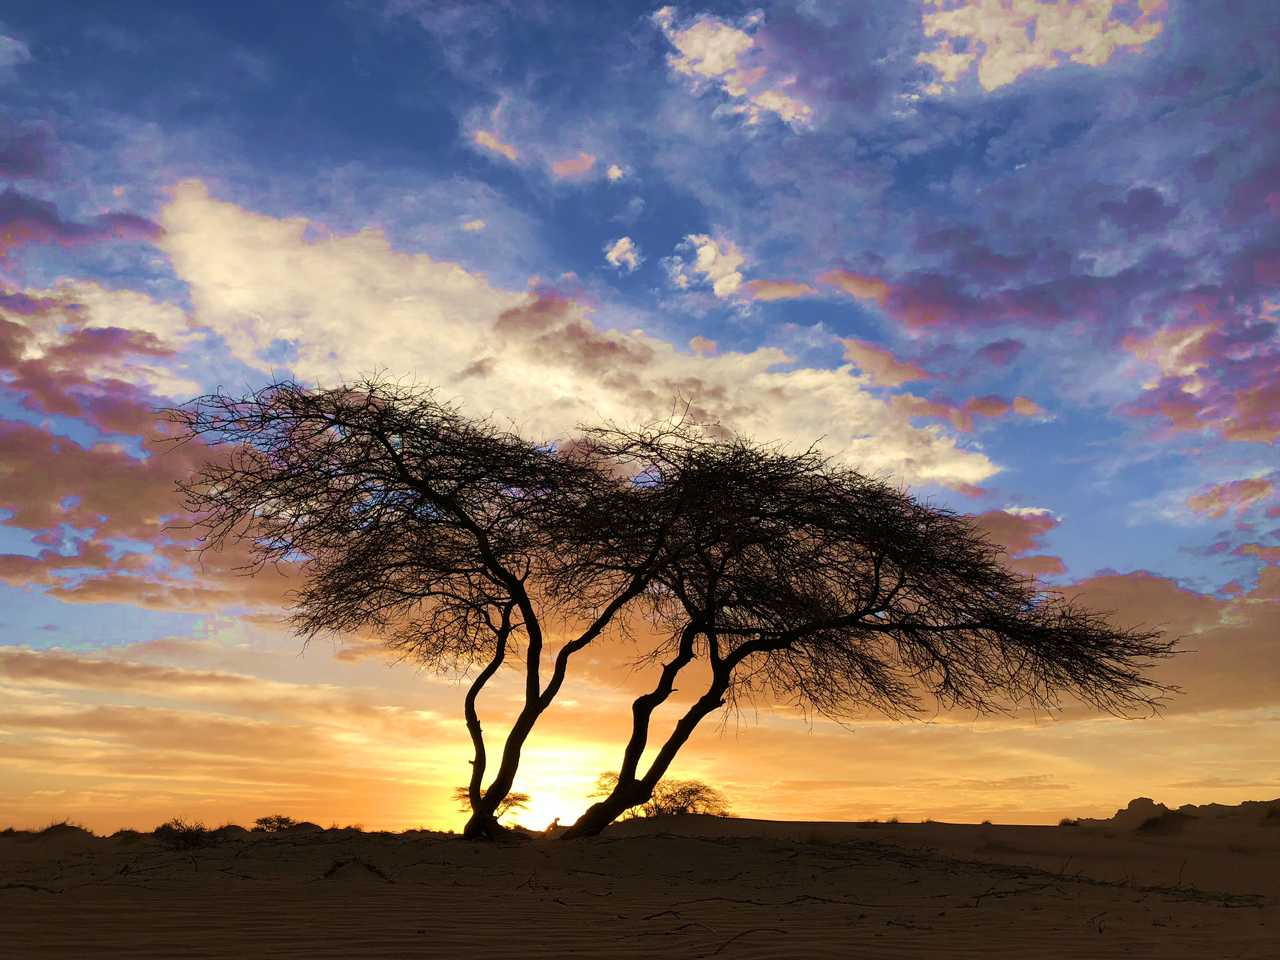 Acacia au coucher du soleil, Mauritanie